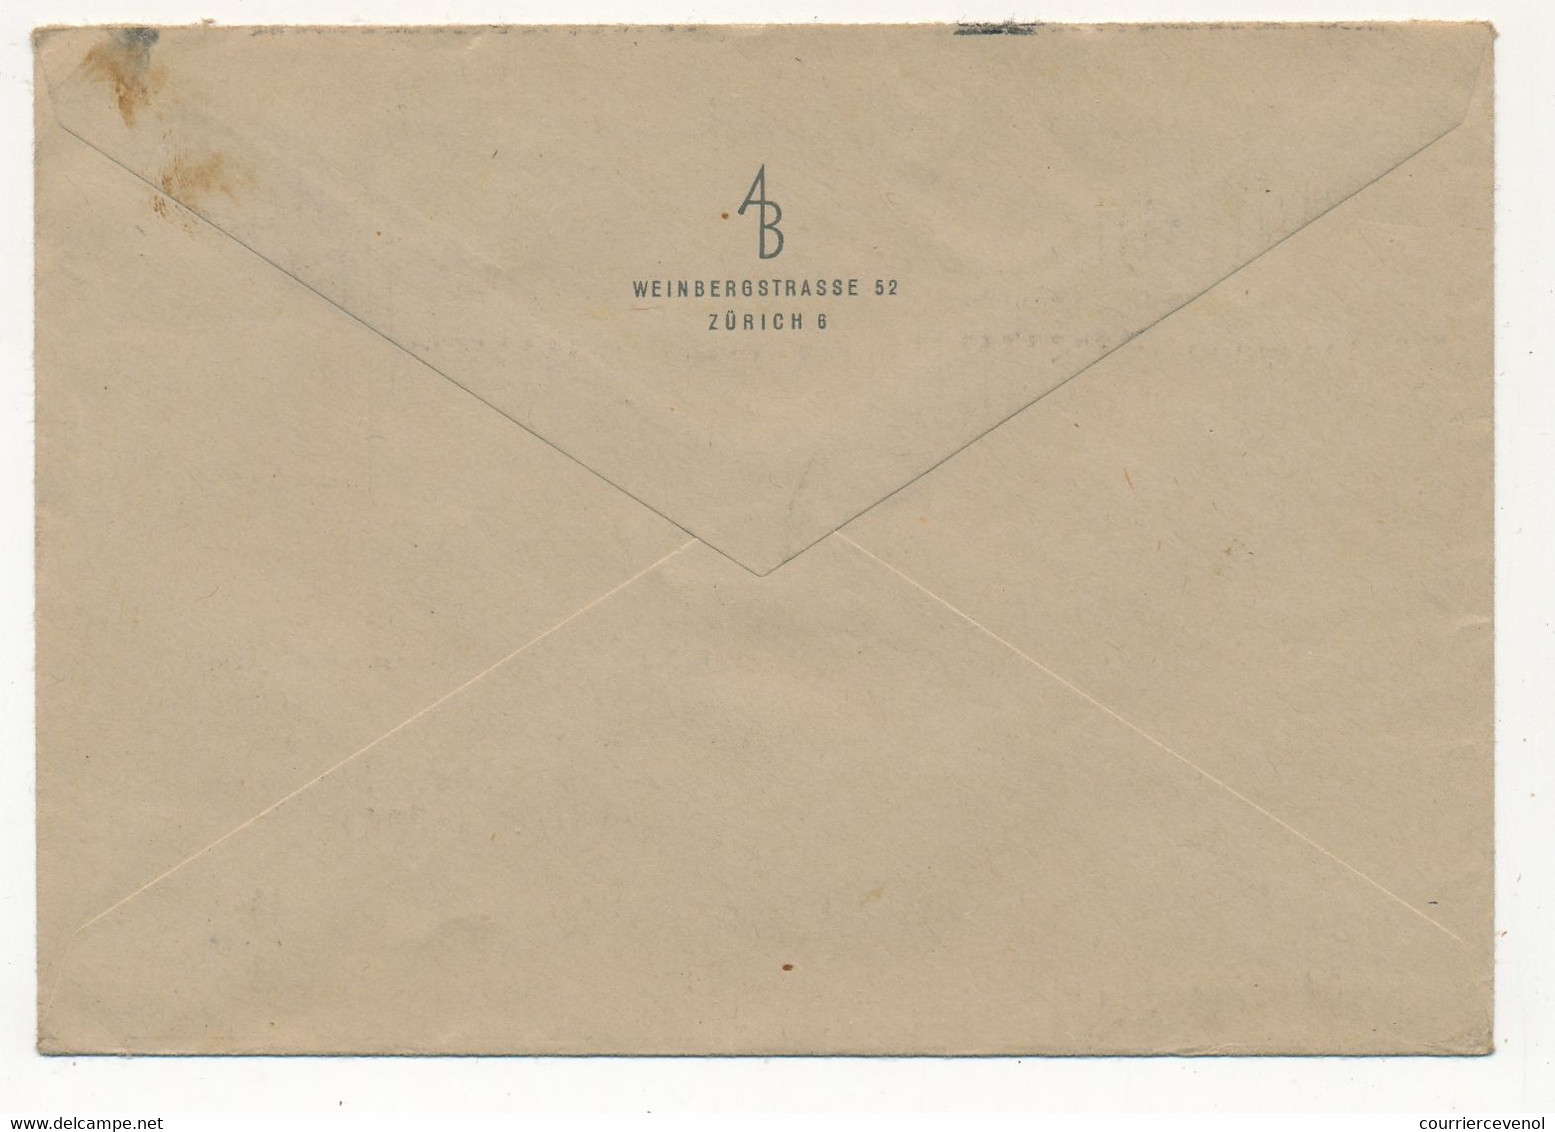 SUISSE - Lot 6 Enveloppes Affranchissements Divers, Composés, 1947 Et 1948 - Covers & Documents